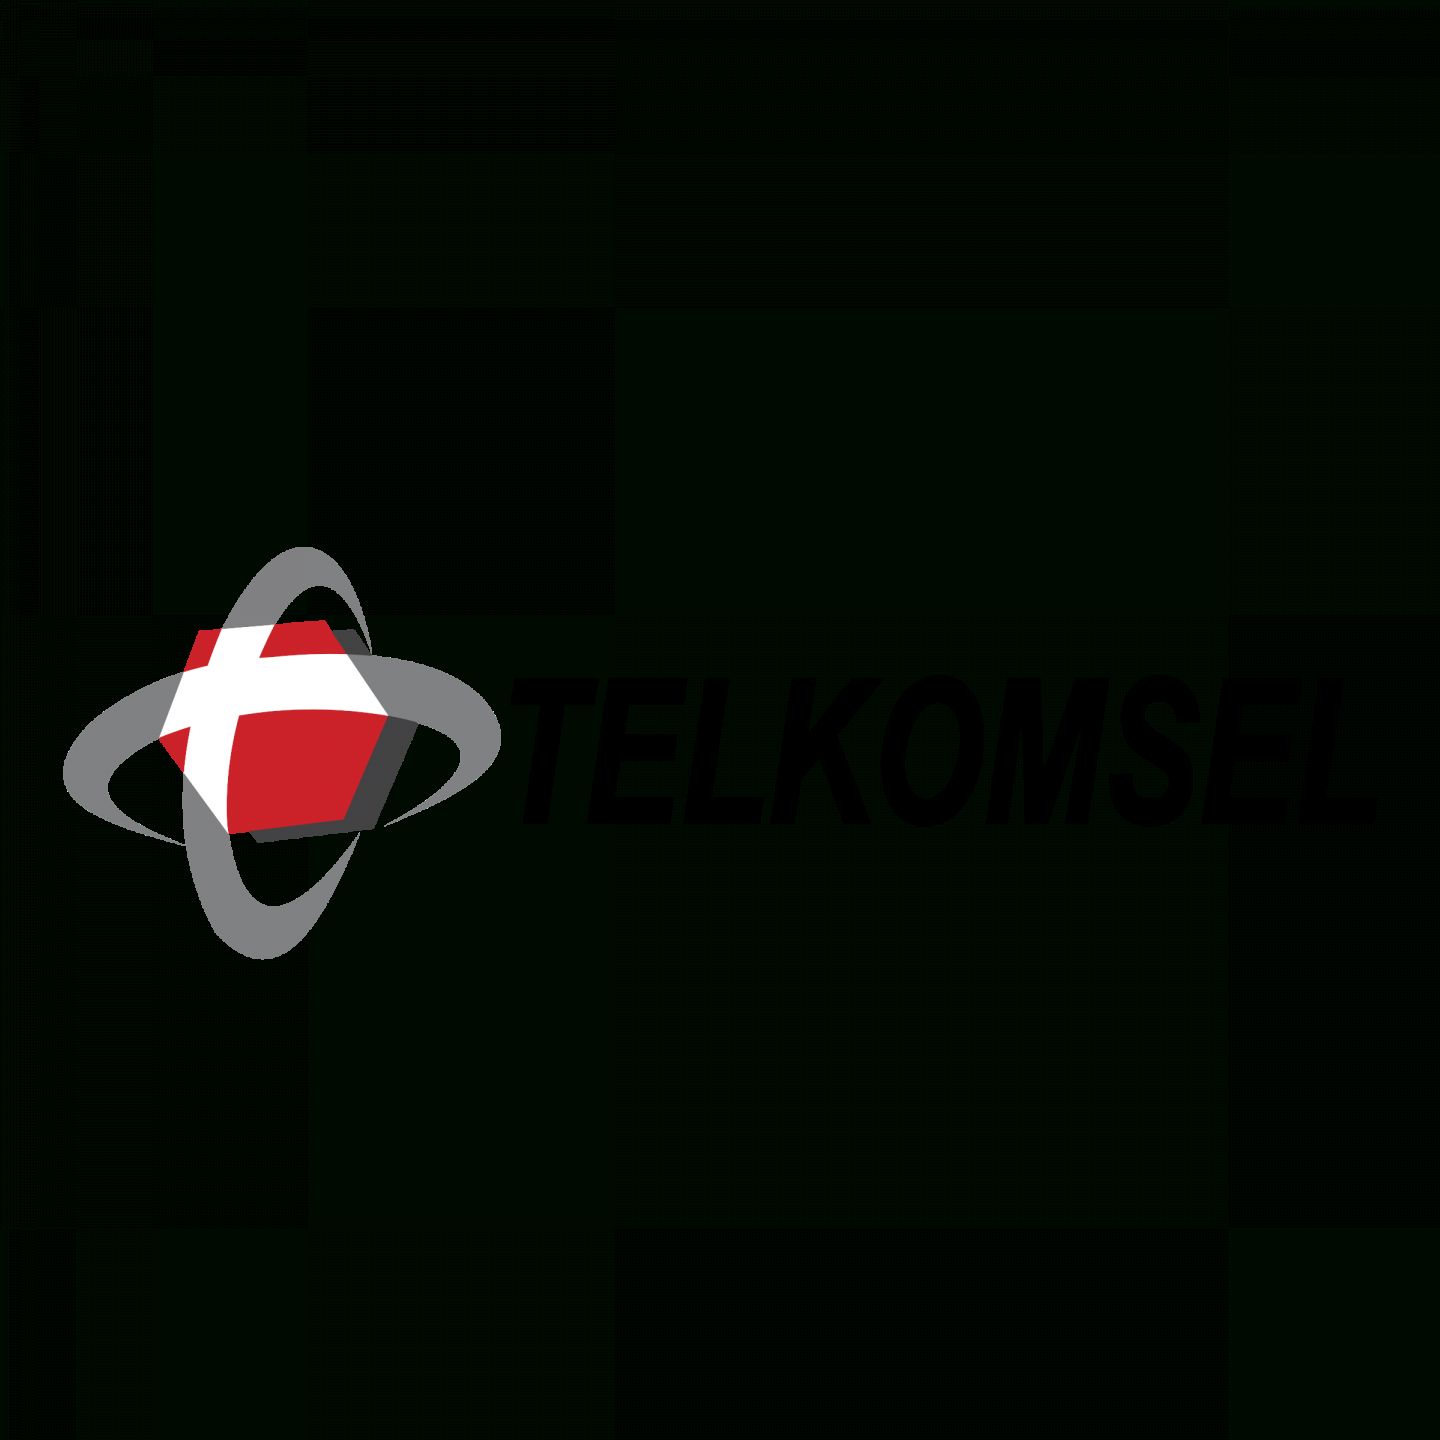 Logo Telkomsel Png